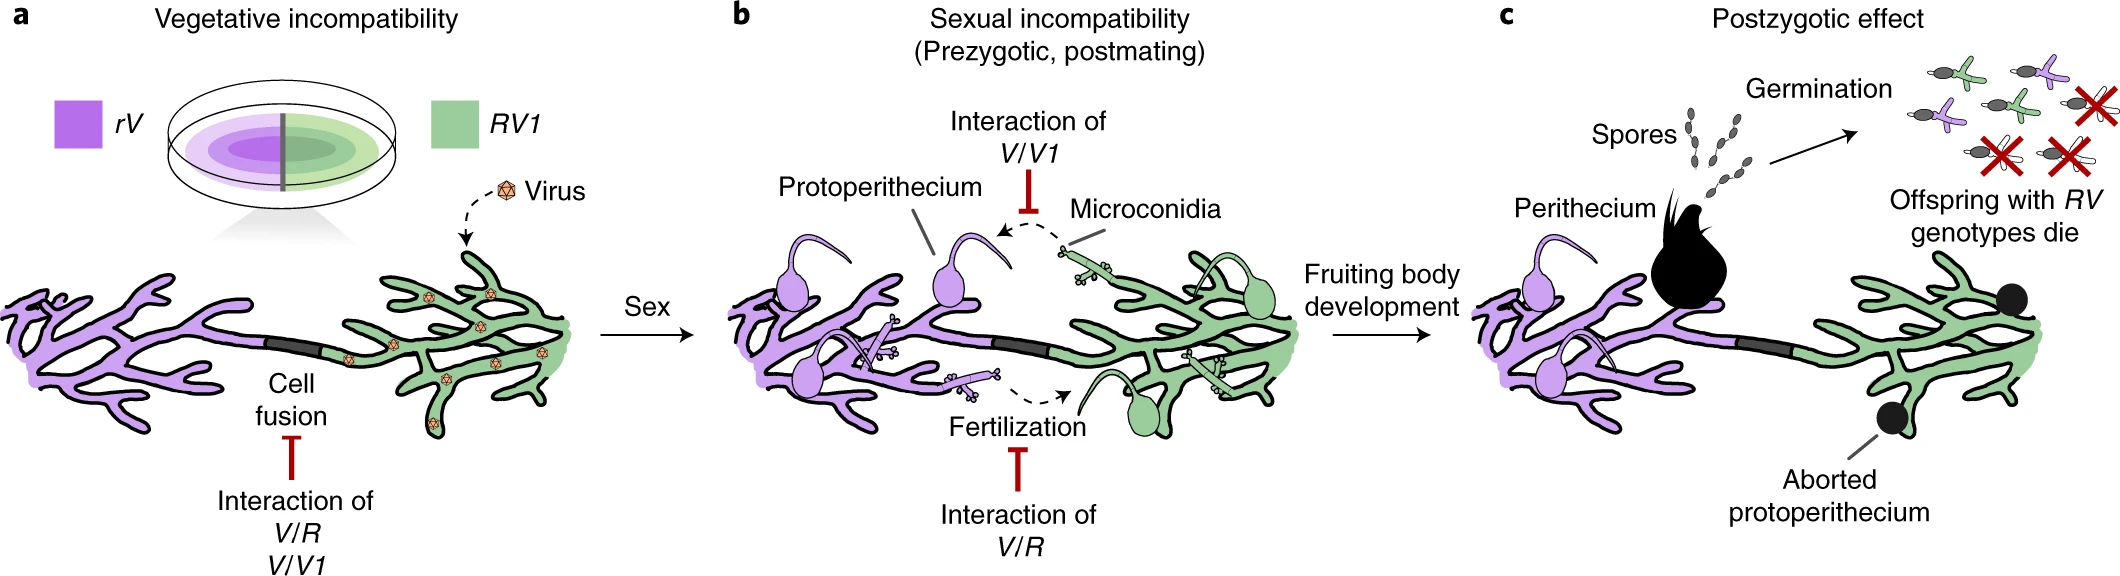 Allorecognition genes drive reproductive isolation in Podospora anserina